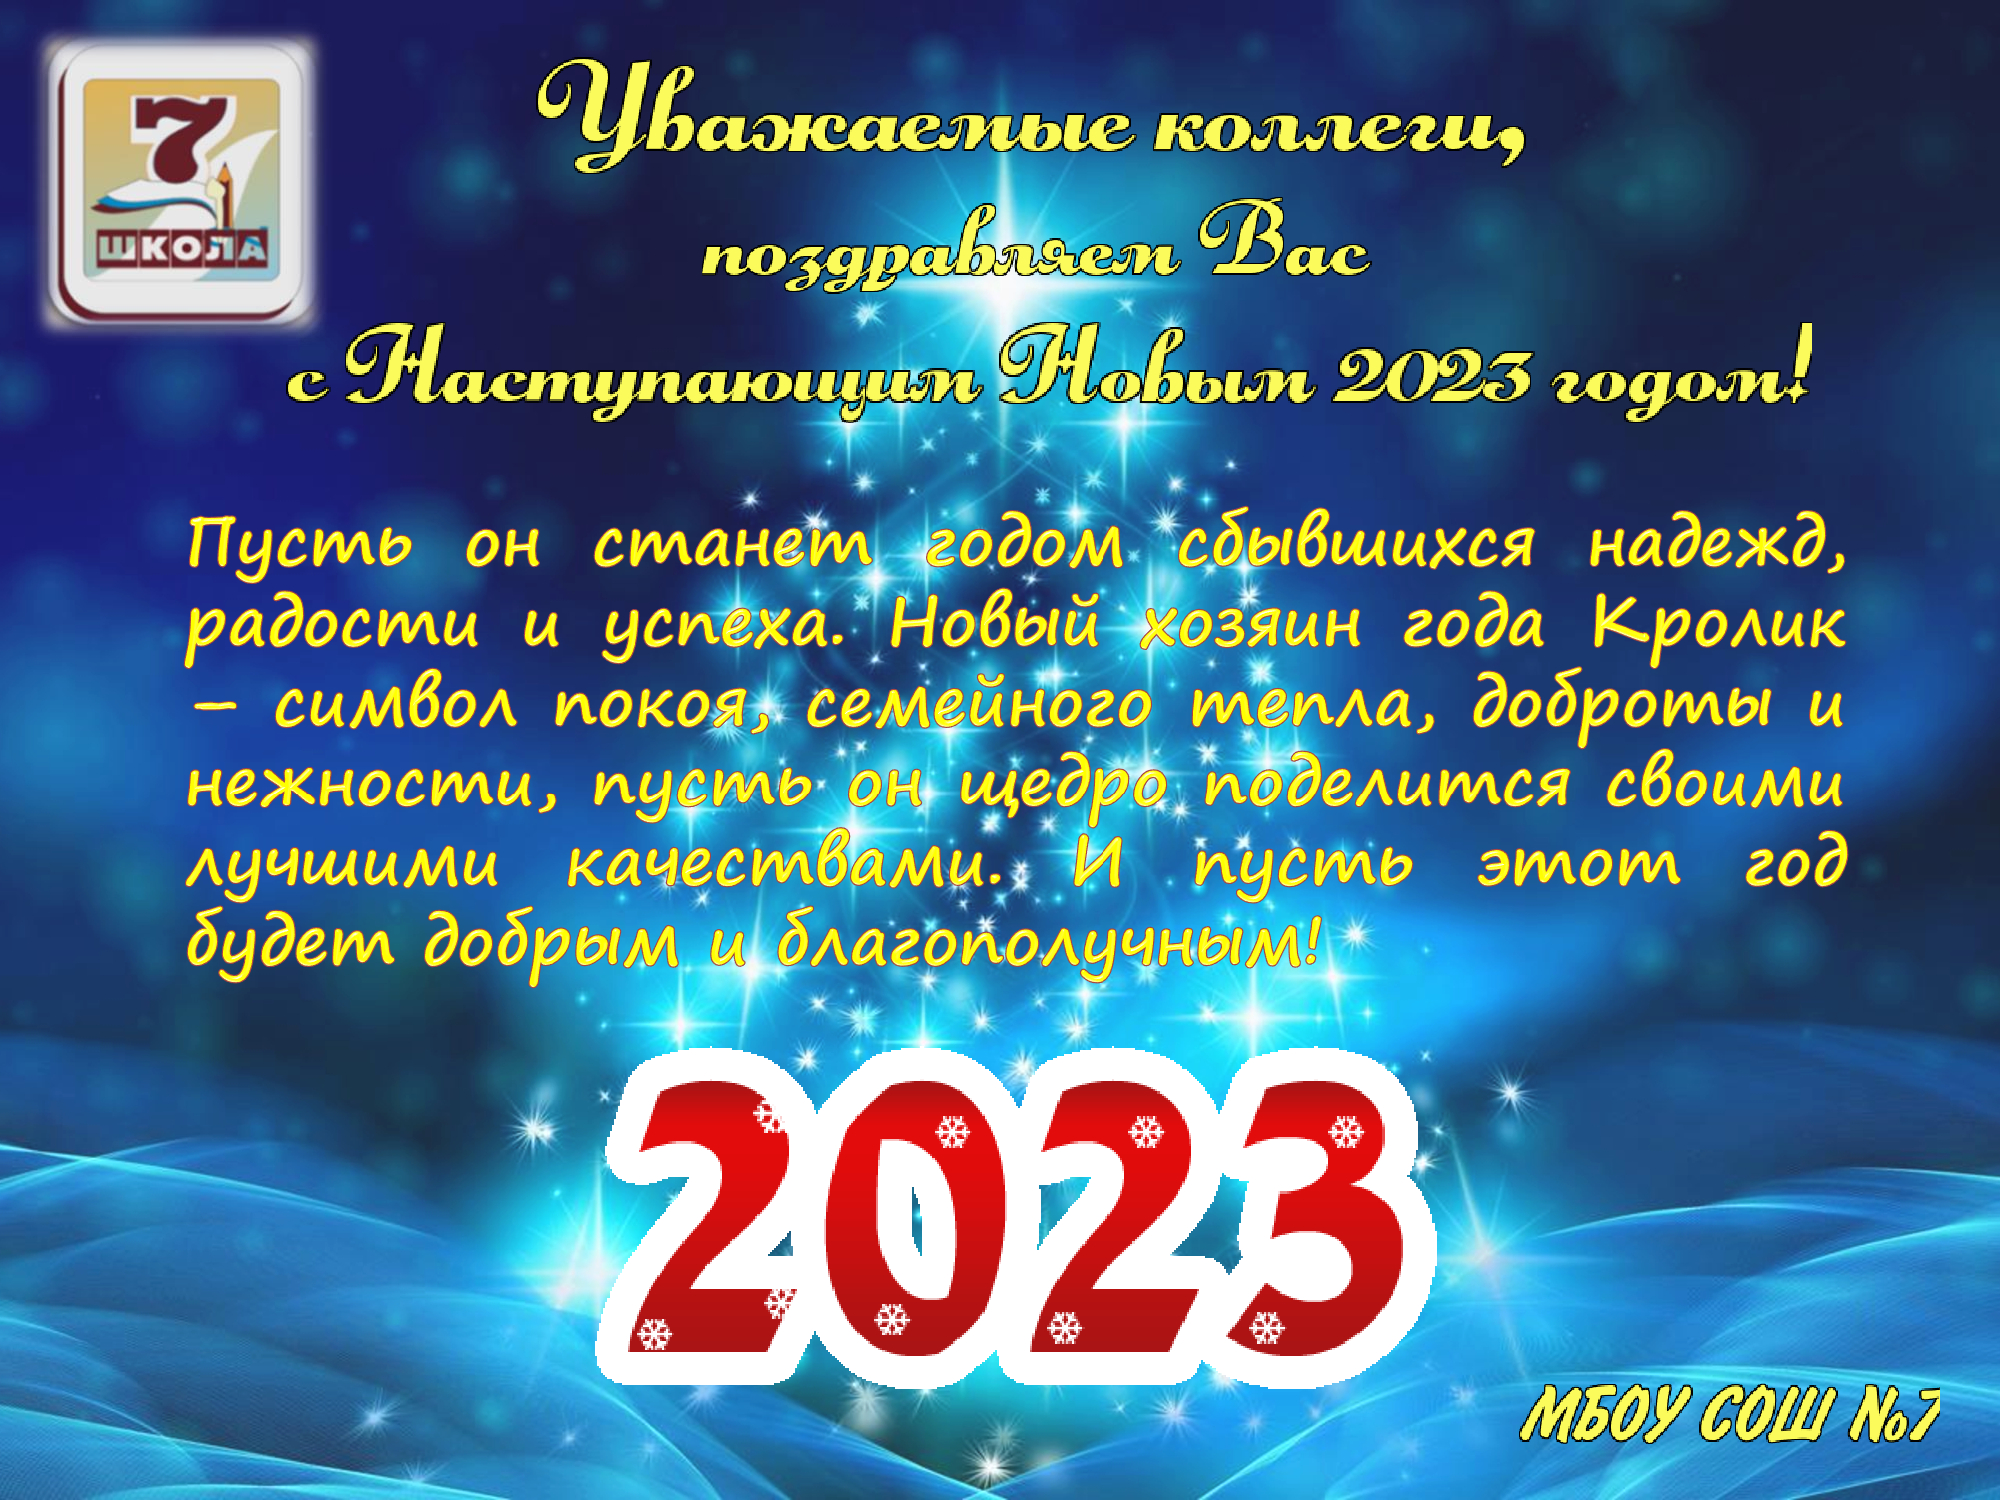 Презентация Новый 2023 год.jpg